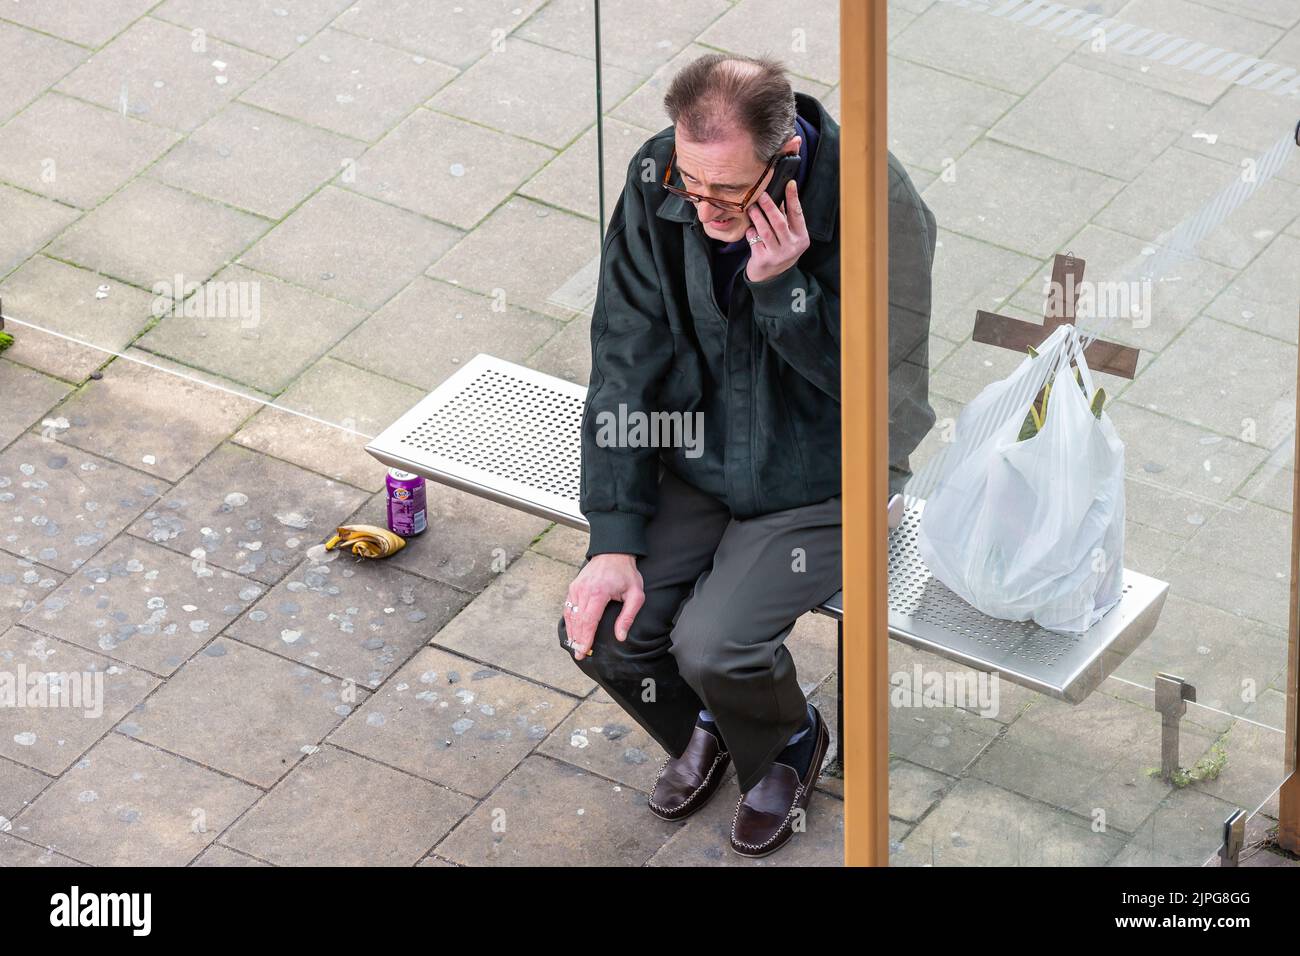 Hombre al teléfono, sentado en el banco de un refugio de autobuses, una bolsa de plástico que contiene una cruz a su lado. Foto de stock